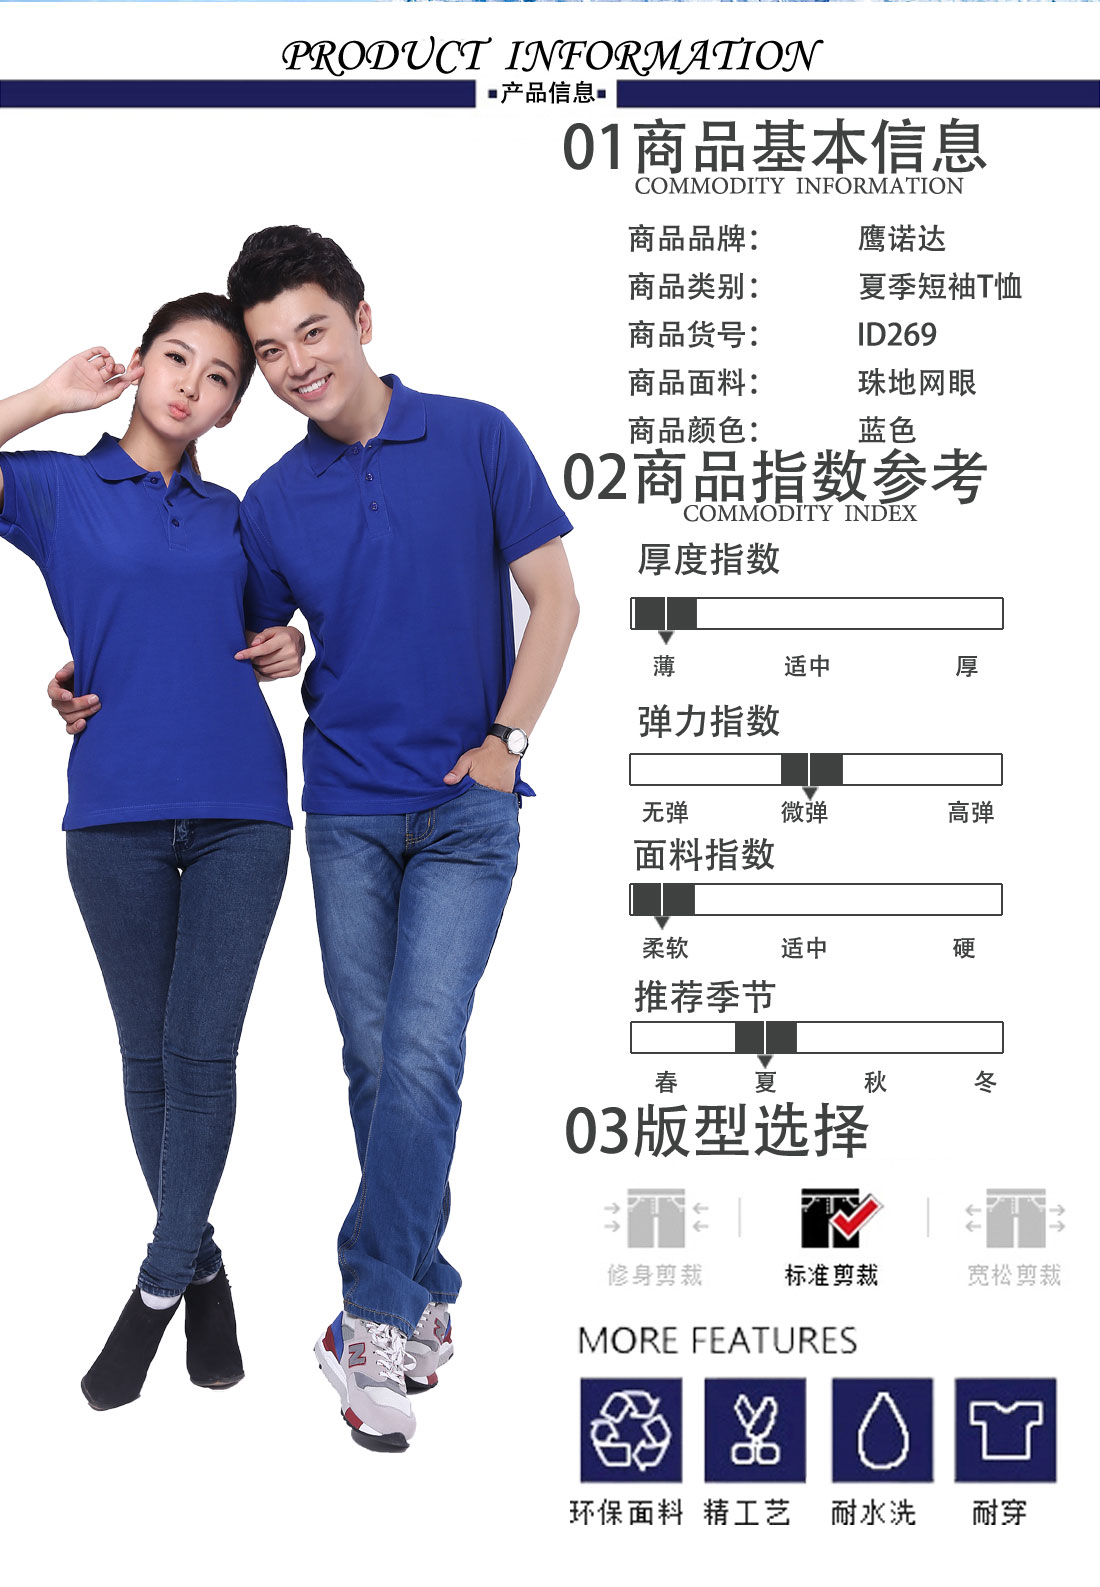 上海文化衫定制商品基本信息、指数参考、版型选择 